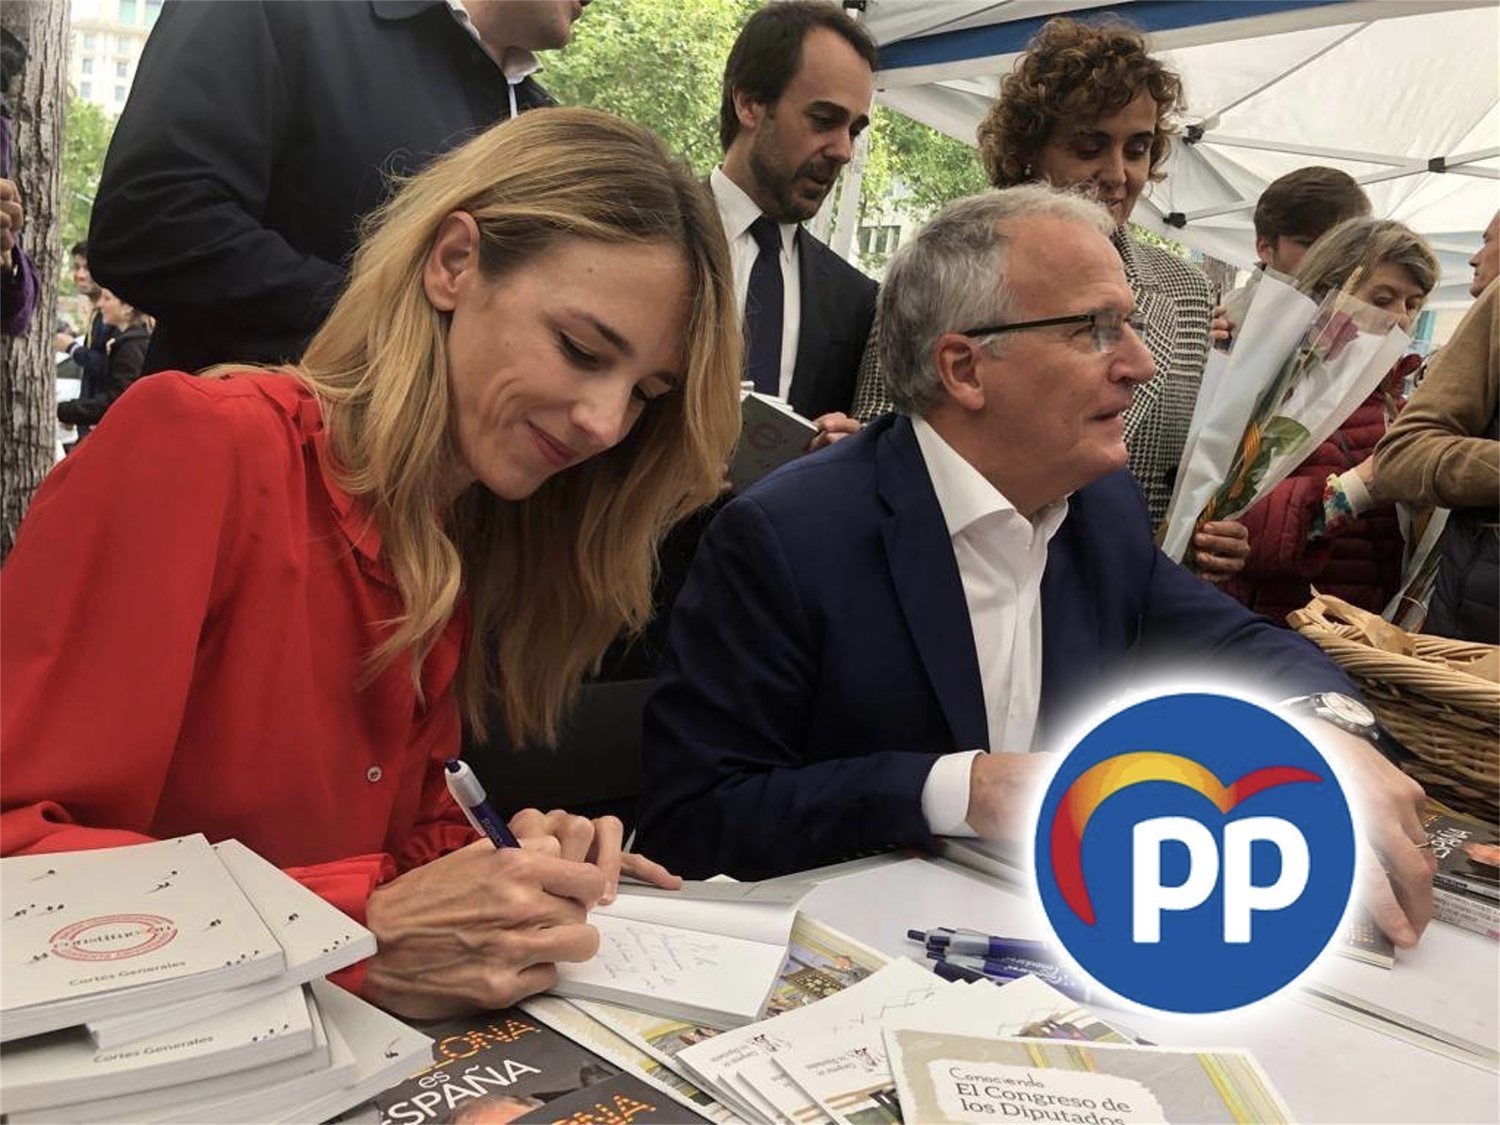 El candidato del PP a Barcelona: "Si pudiera repatriar a menores no acompañados, lo haría"